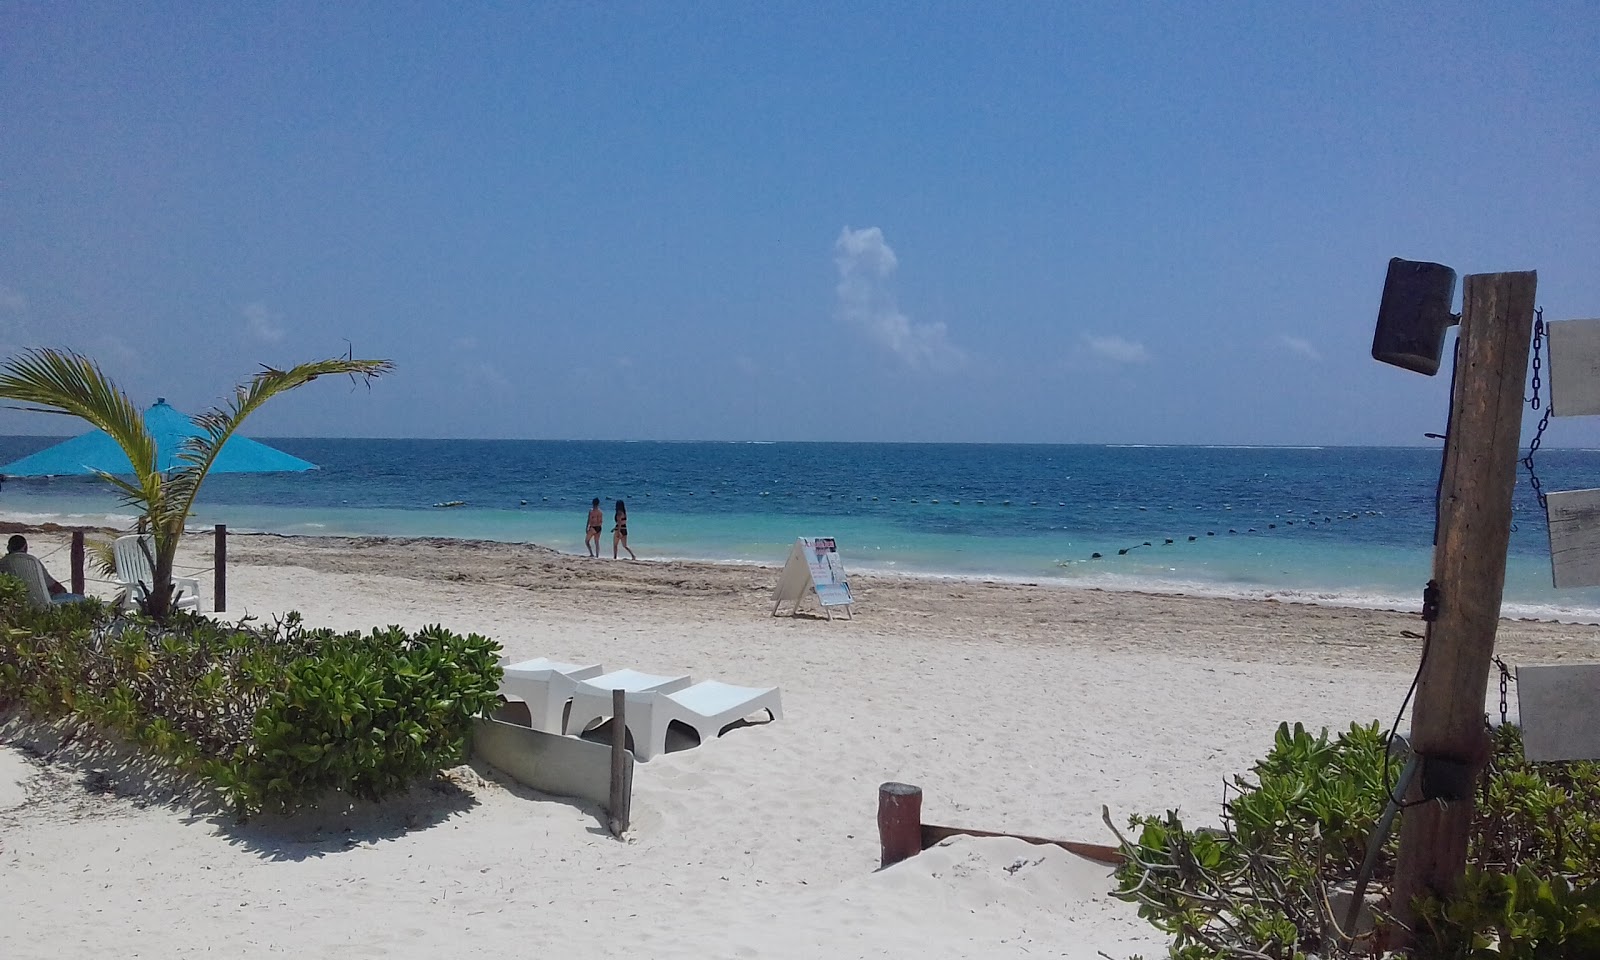 Φωτογραφία του Excellence Riviera Cancun με μακρά ευθεία ακτή